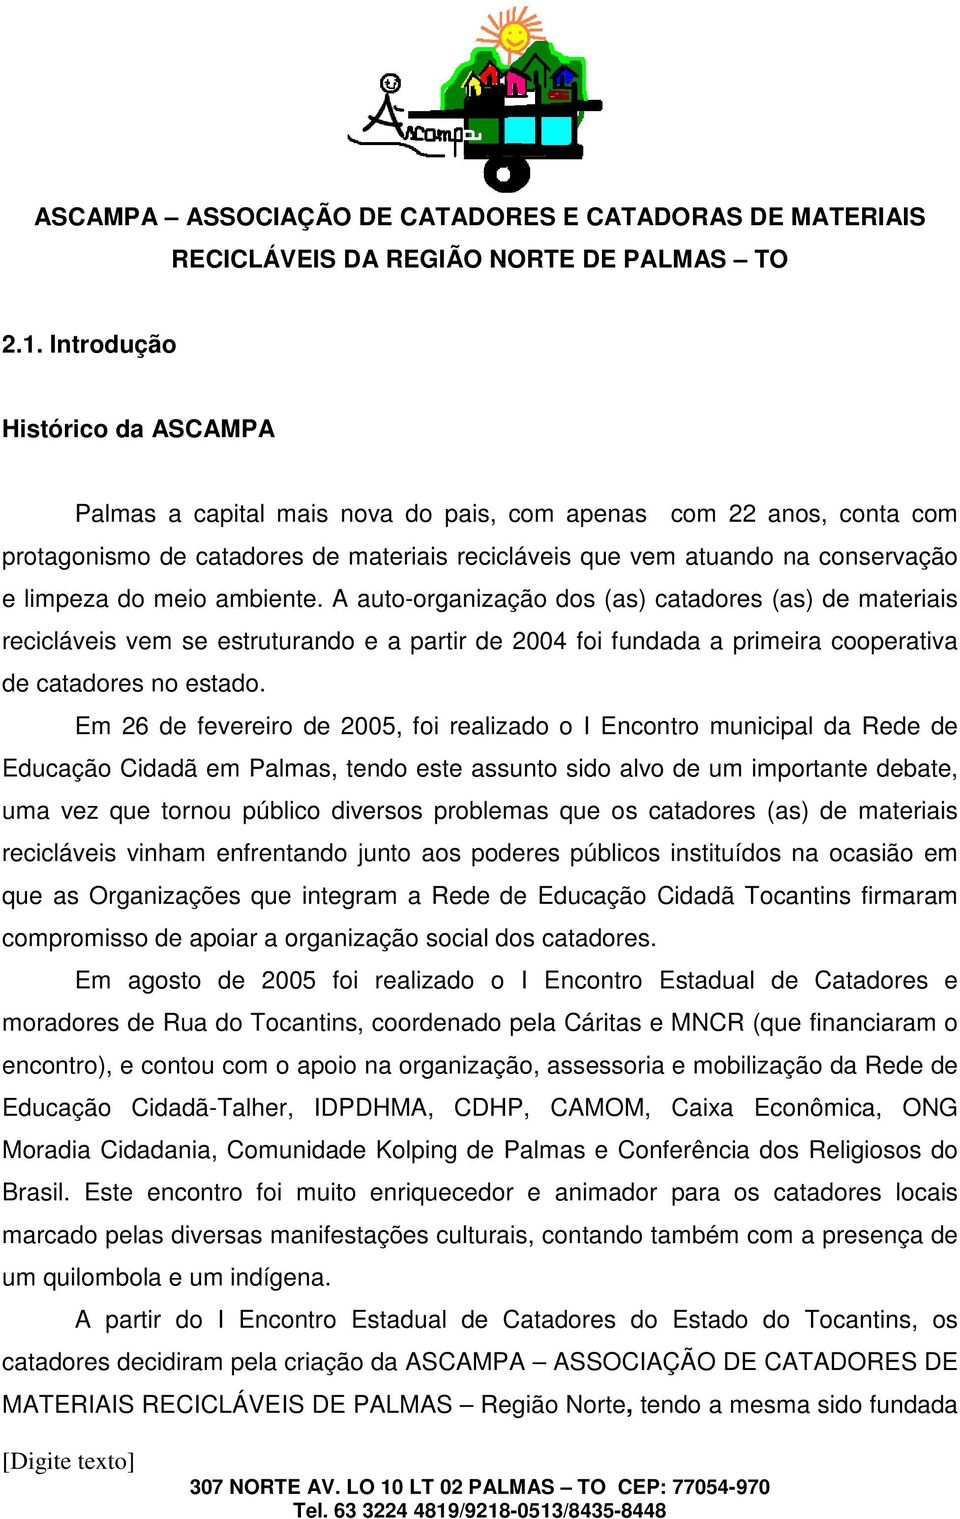 Em 26 de fevereiro de 2005, foi realizado o I Encontro municipal da Rede de Educação Cidadã em Palmas, tendo este assunto sido alvo de um importante debate, uma vez que tornou público diversos